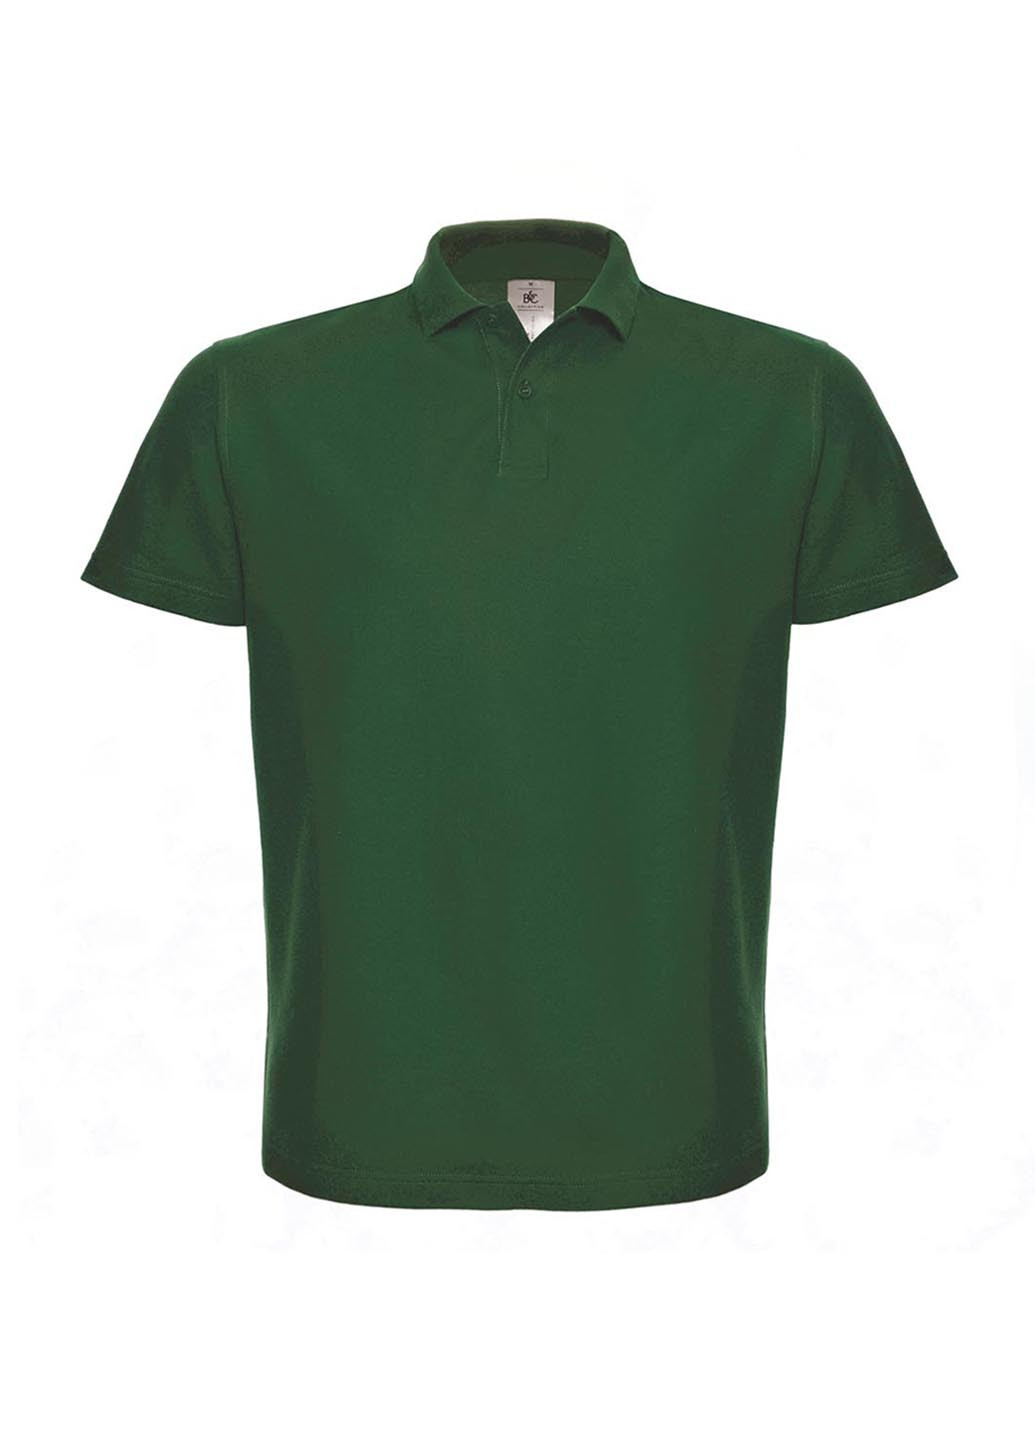 Темно-зеленая футболка-поло для мужчин B&C однотонная